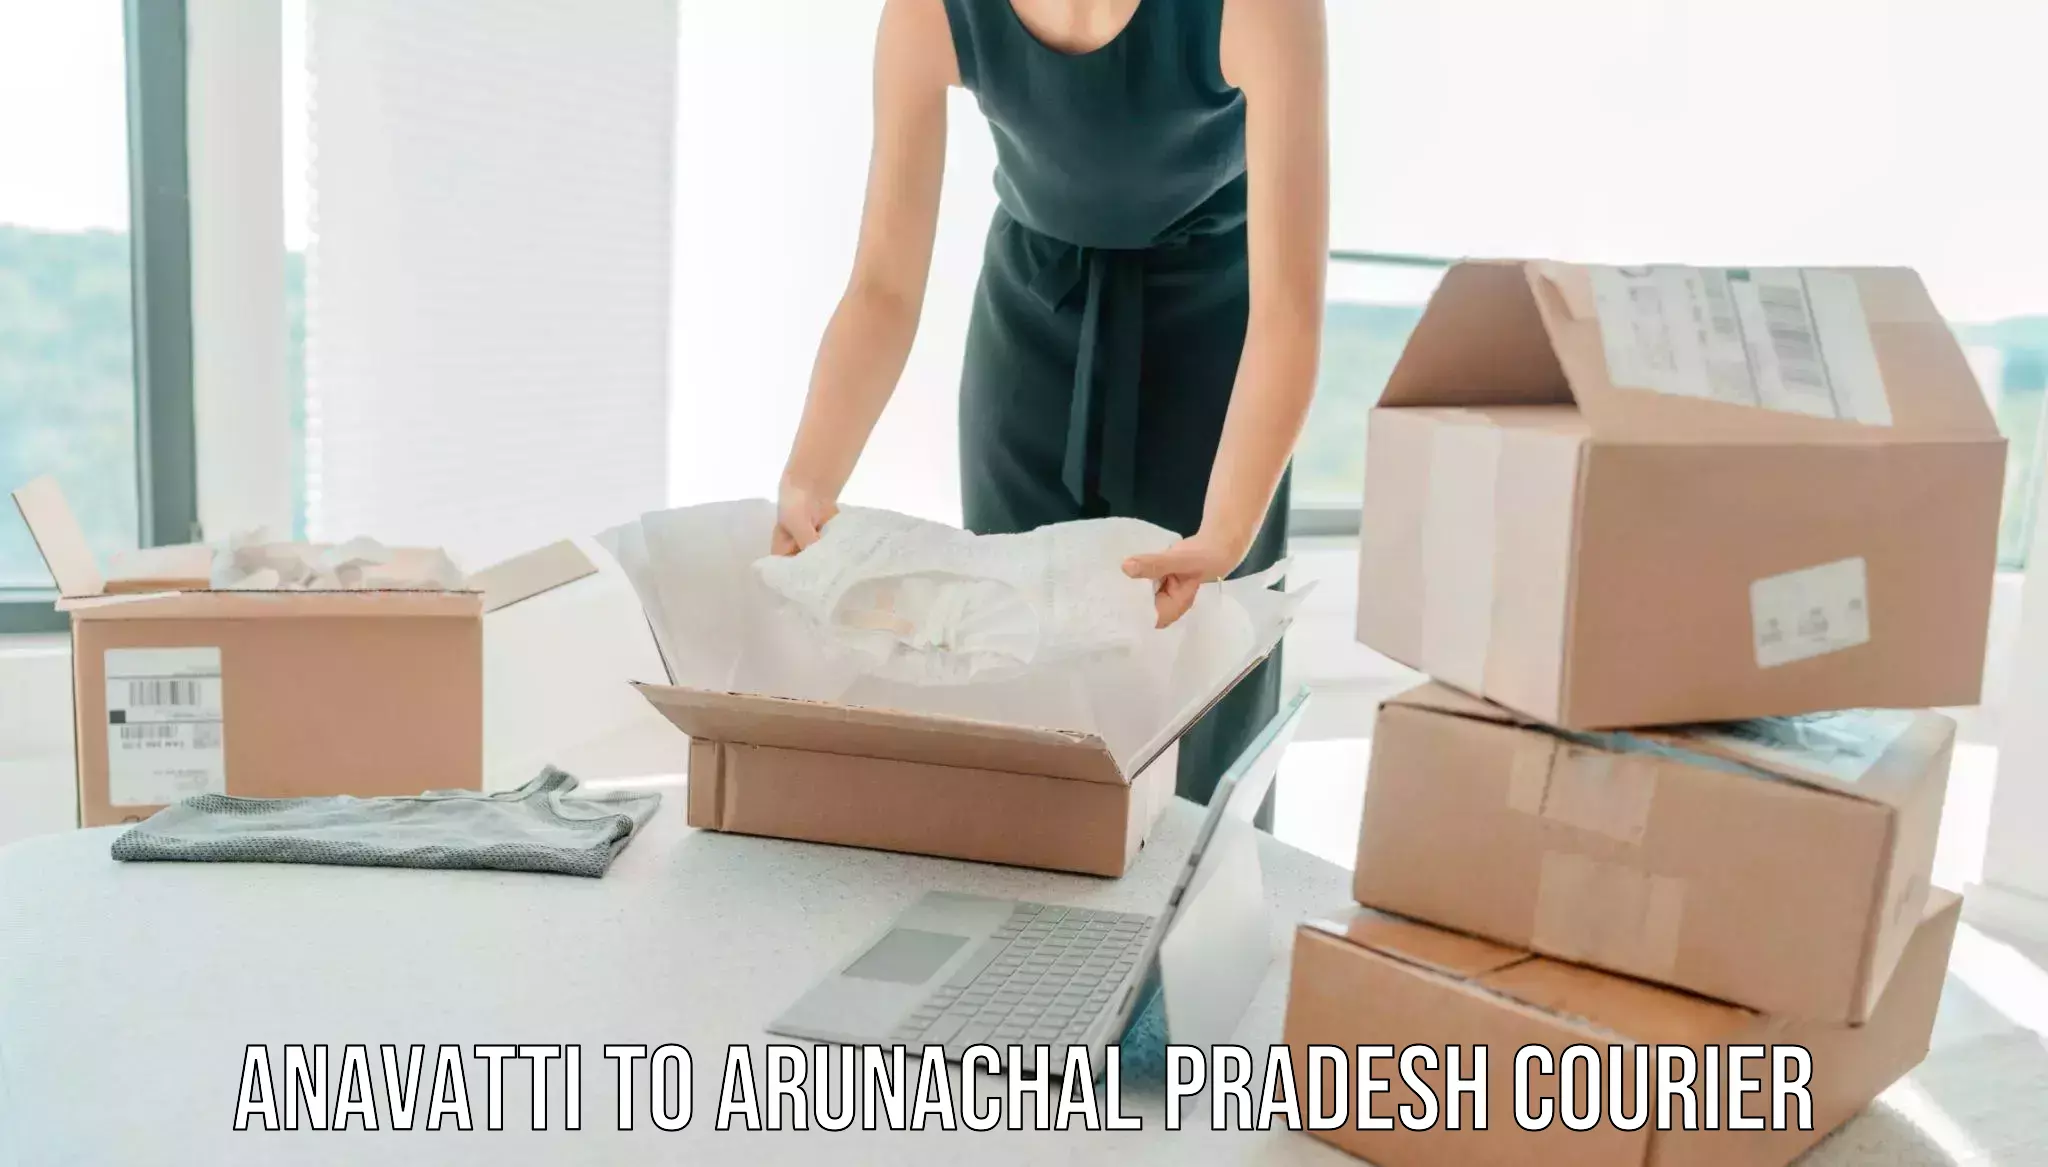 Furniture moving experts Anavatti to Arunachal Pradesh